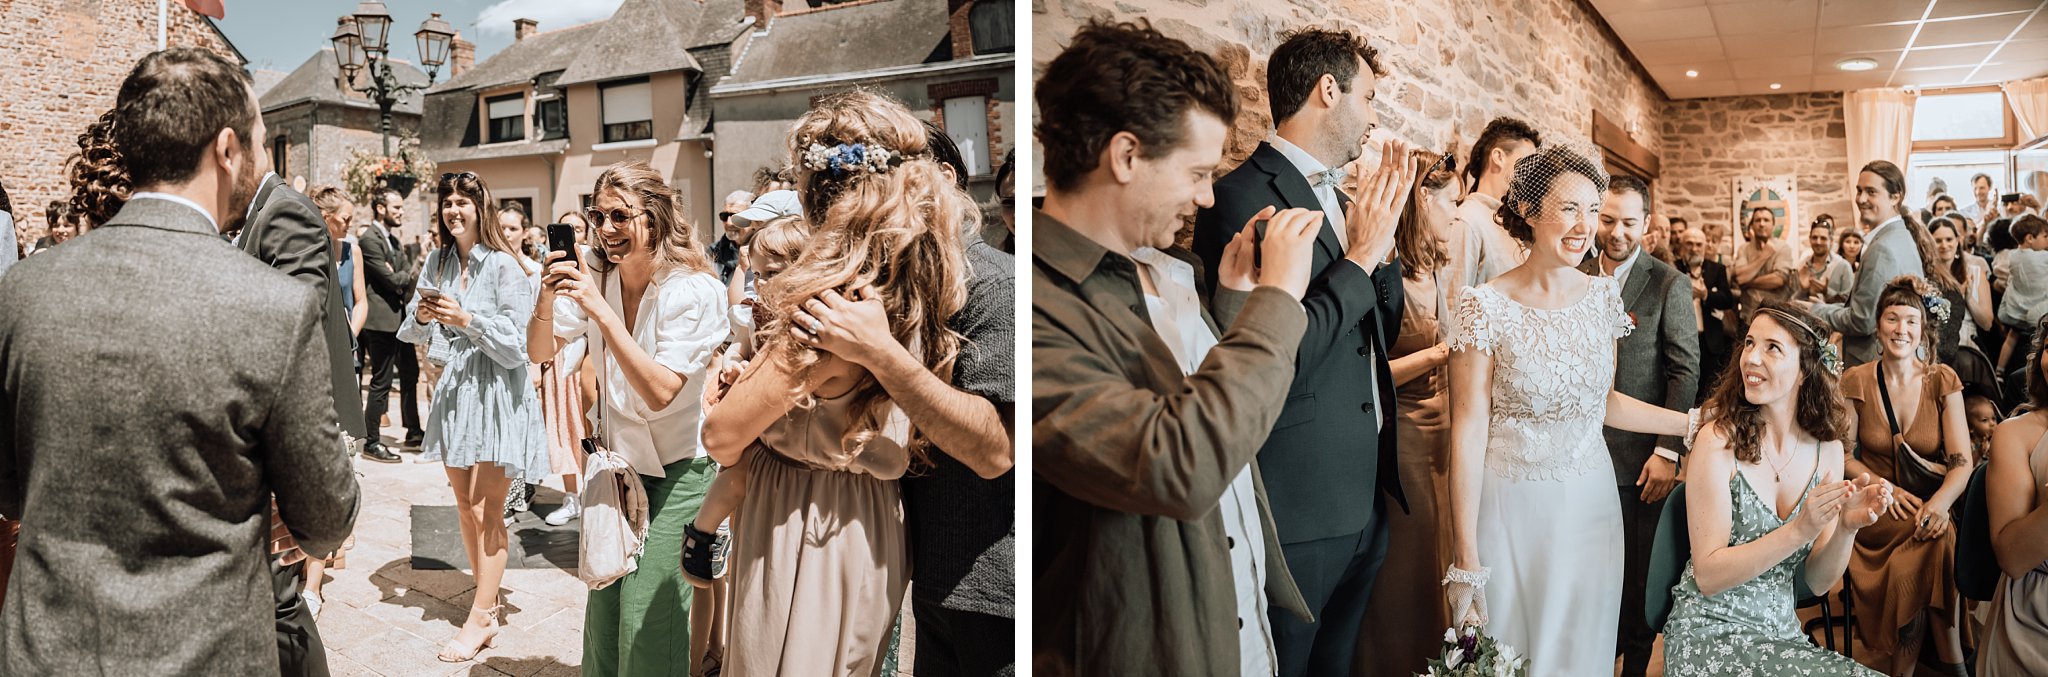 les invités accueillent les mariés dans la mairie.Un reportage photo mariage en Bretagne sur le thème champêtre et bohème